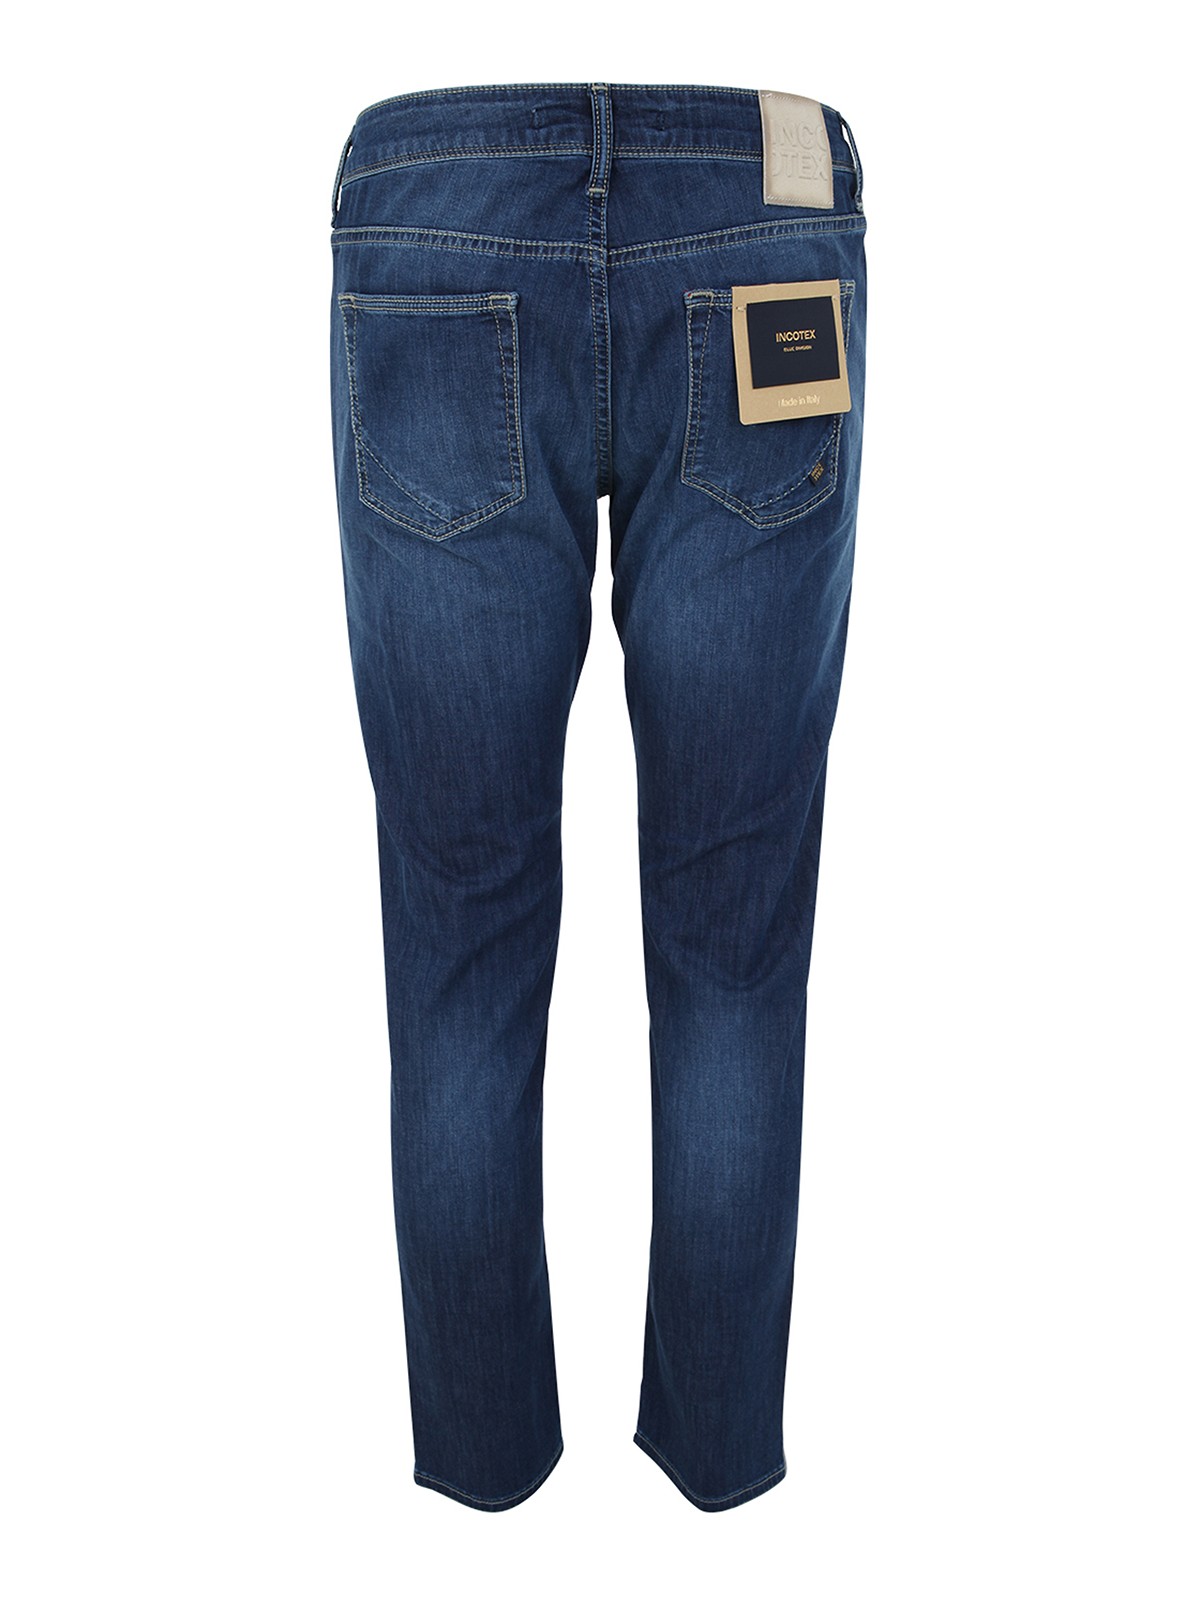 Shop Incotex Genjc Five Pocket Comfort Denim Jeans In Light Wash